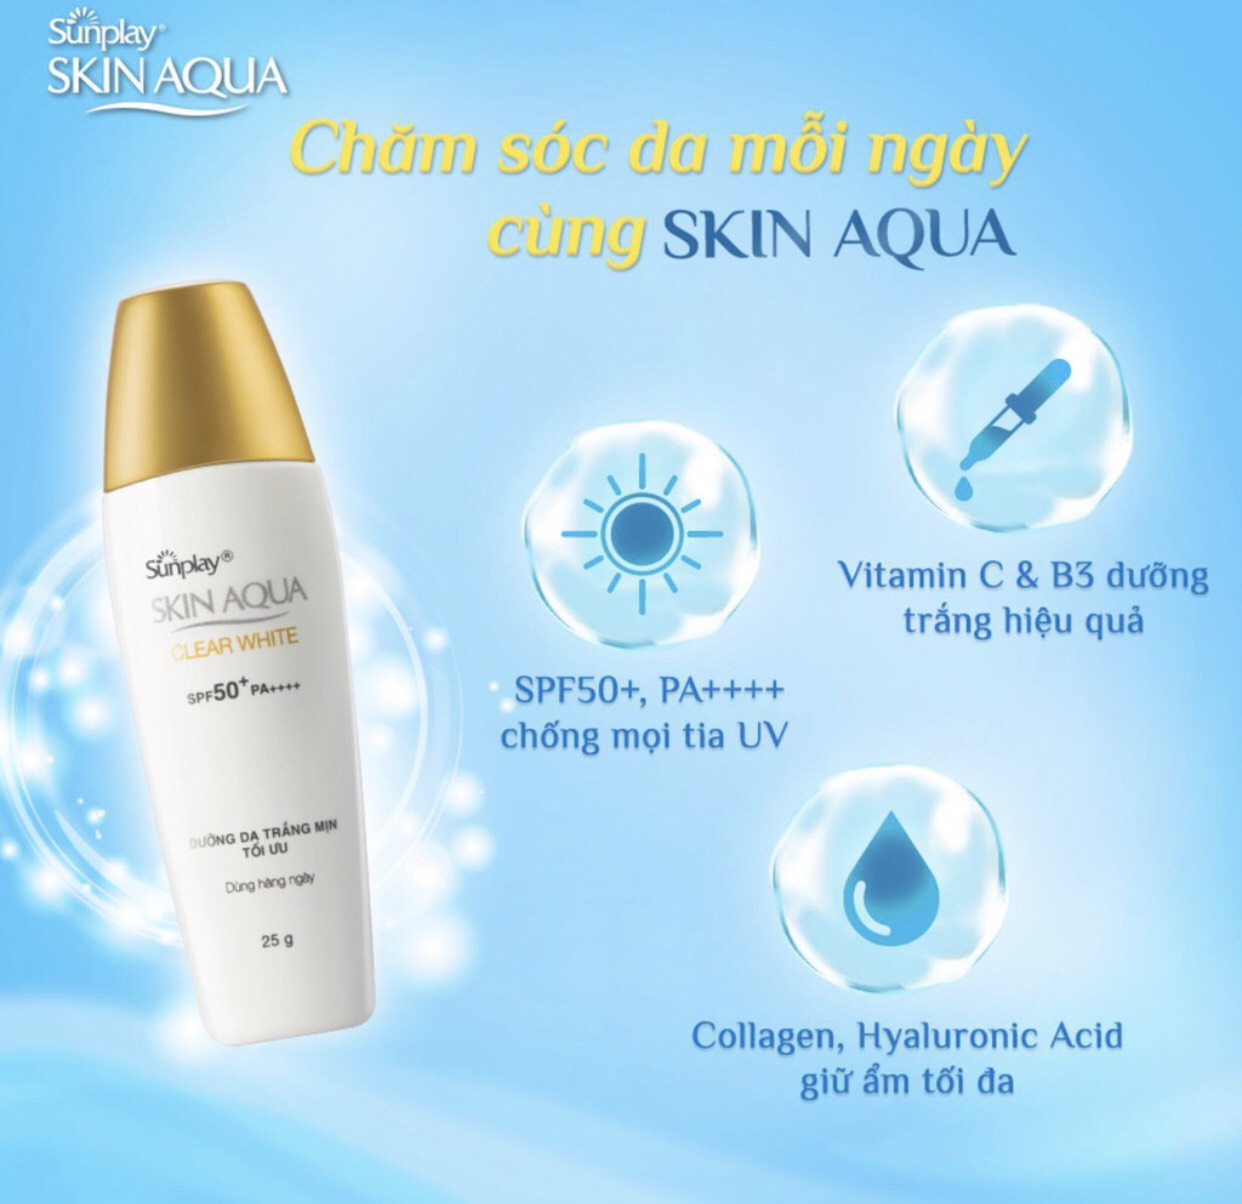 Kem chống nắng Skin Aqua nắp vàng Sunplay Clear White SPF50+ PA++++ 30g thumbnail